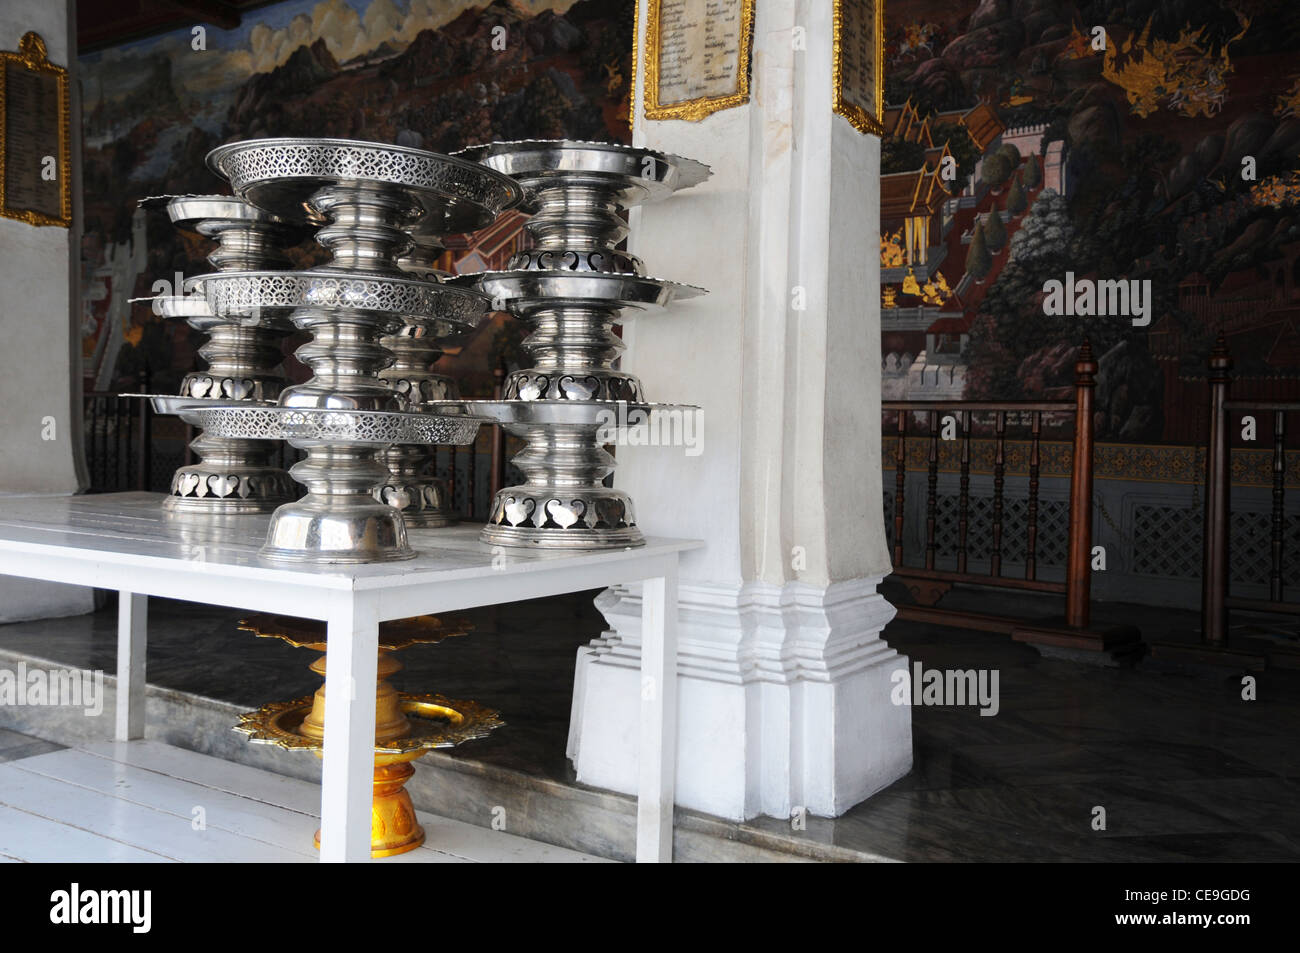 Silver dishes stacked at Hor Kanthararasdr, Grand Palace, Bangkok, Thailand Stock Photo